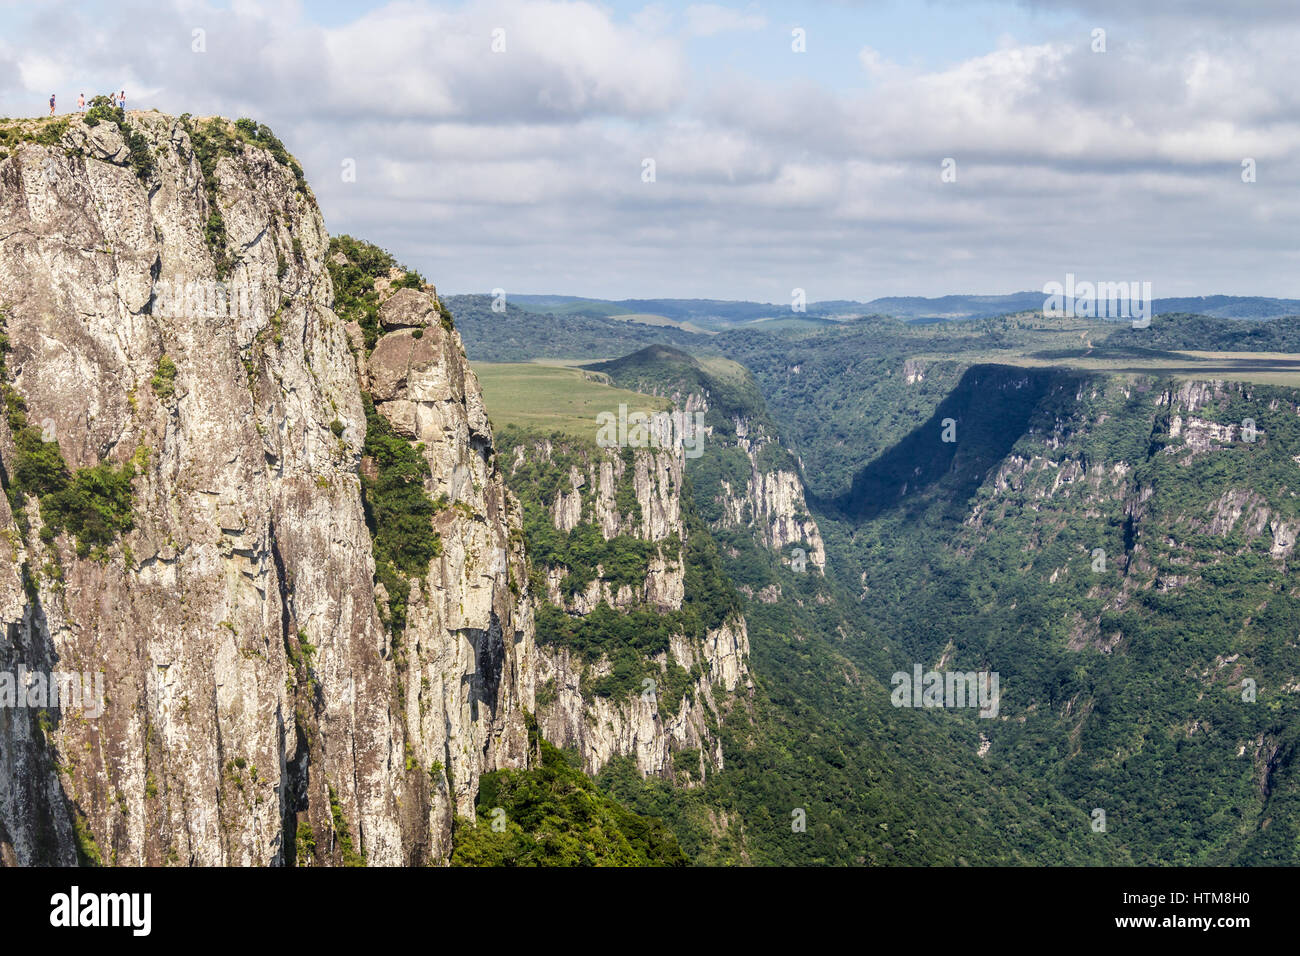 People over the Cliffs at Fortaleza Canyon, Cambara do Sul, Rio Grande do Sul, Brazil Stock Photo